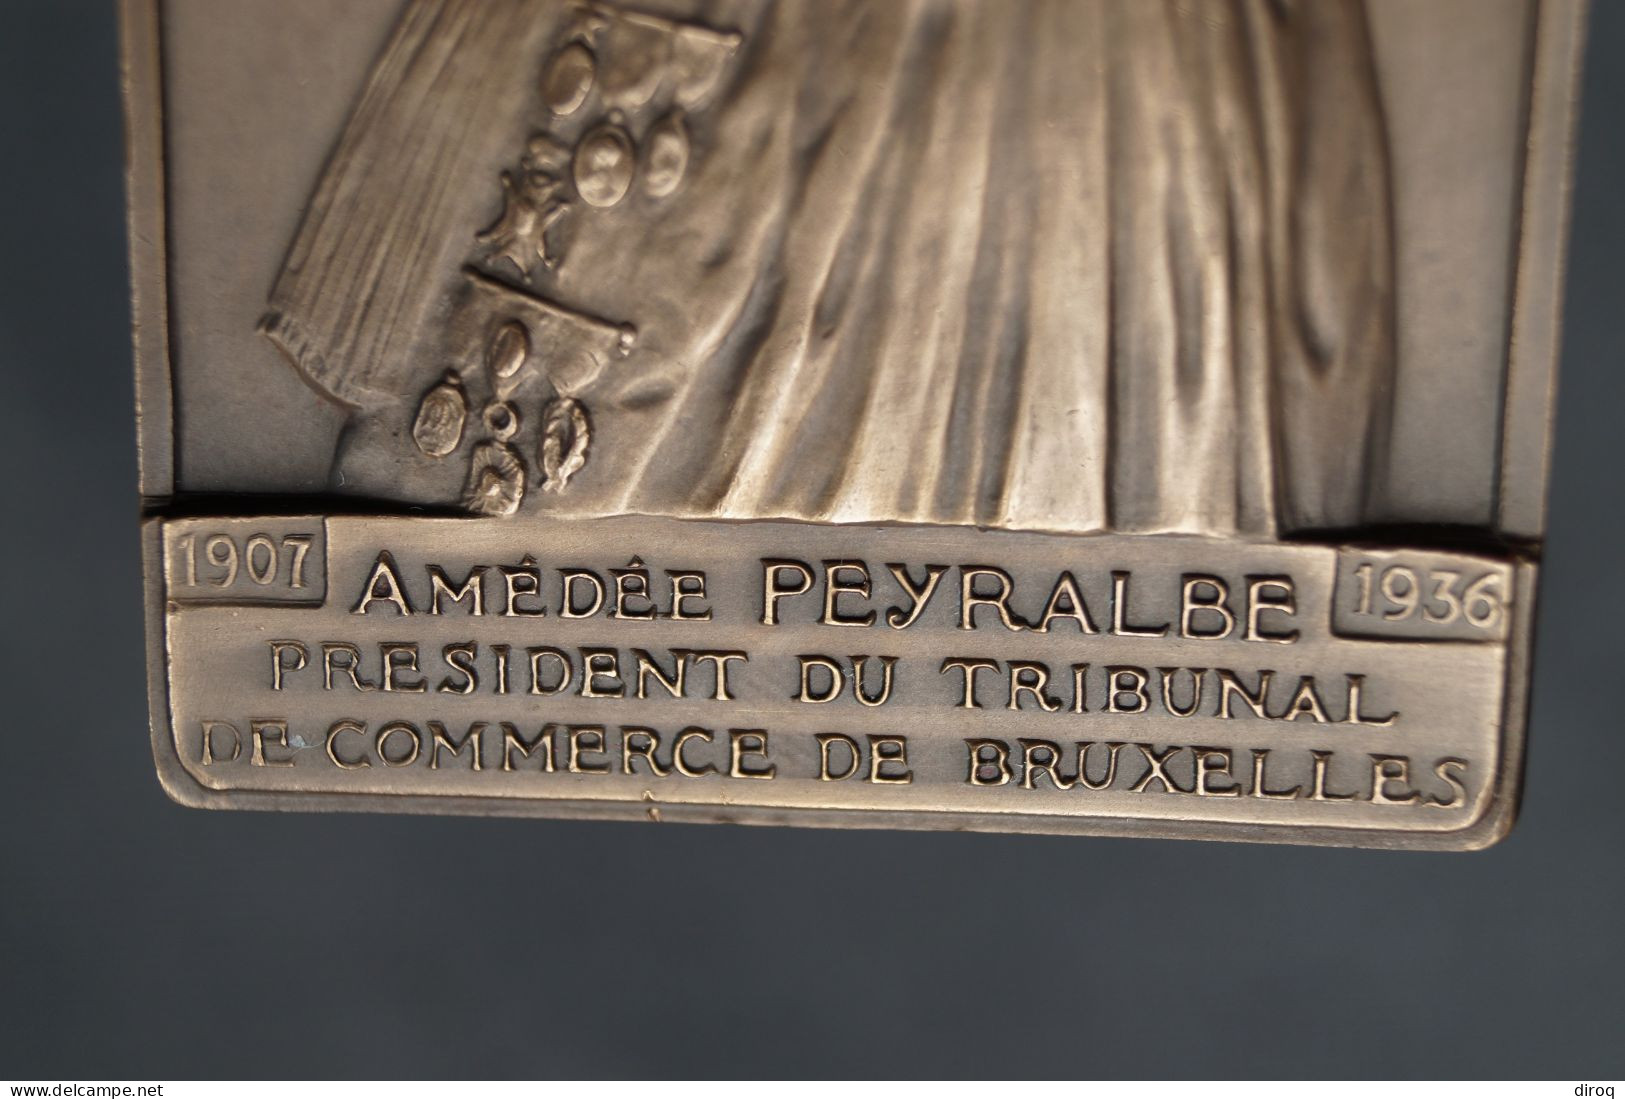 Ancien Bronze Signé Jul. Goessens,à Amédée Peyralbe,1907-1936,Tribunal De Bruxelles,80 Mm./55 Mm. - Bronzes